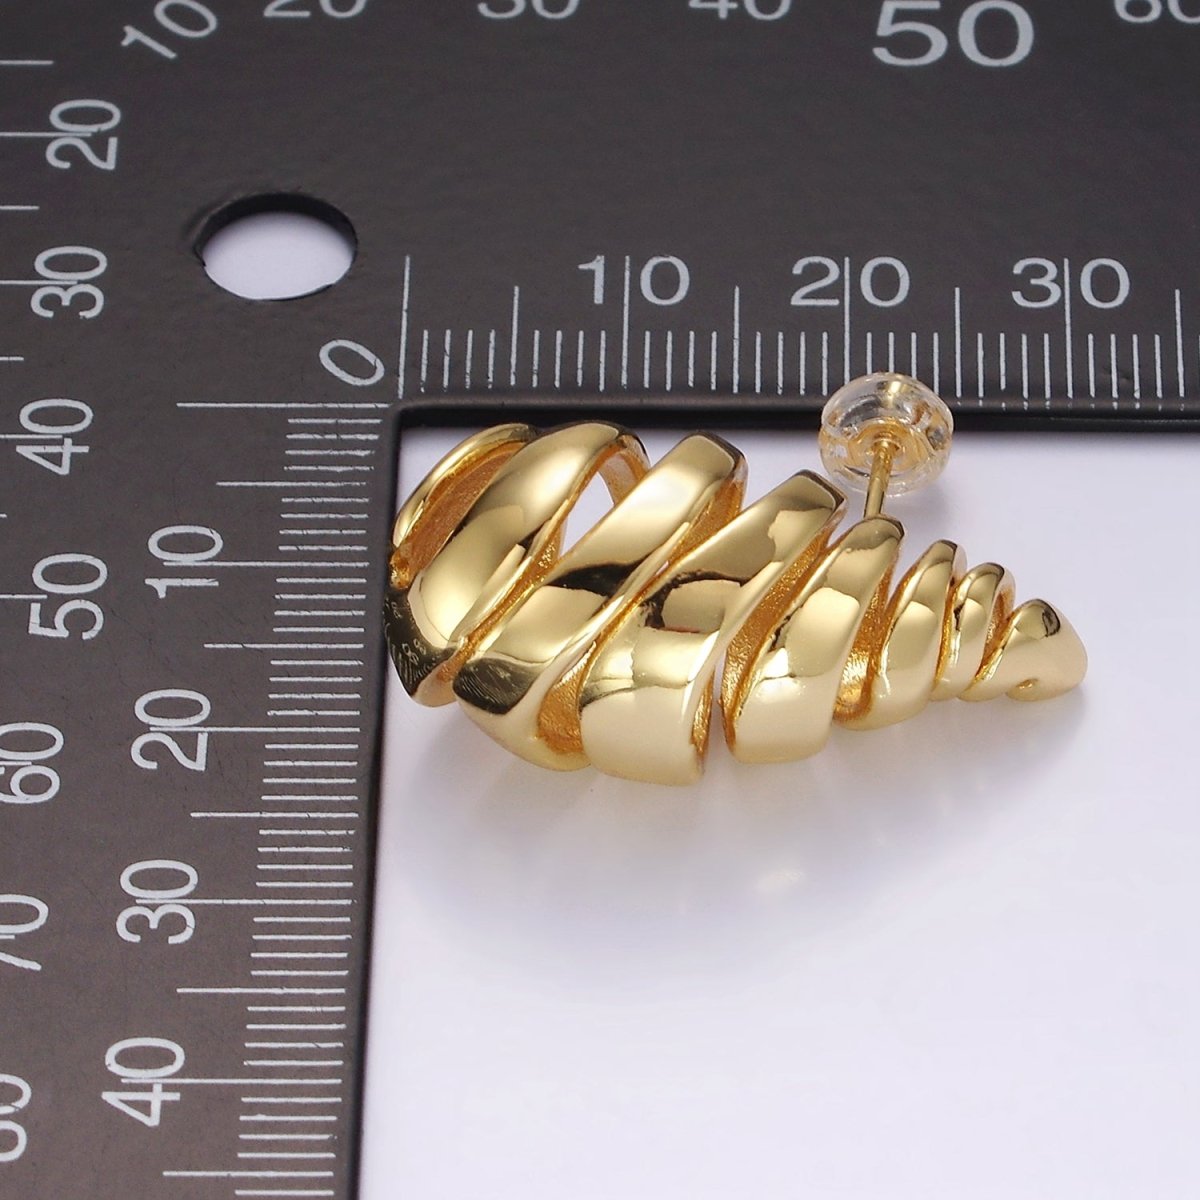 14K Gold Filled 30mm Open Multiple Band Teardrop Minimalist Stud Earrings | AE178 - DLUXCA